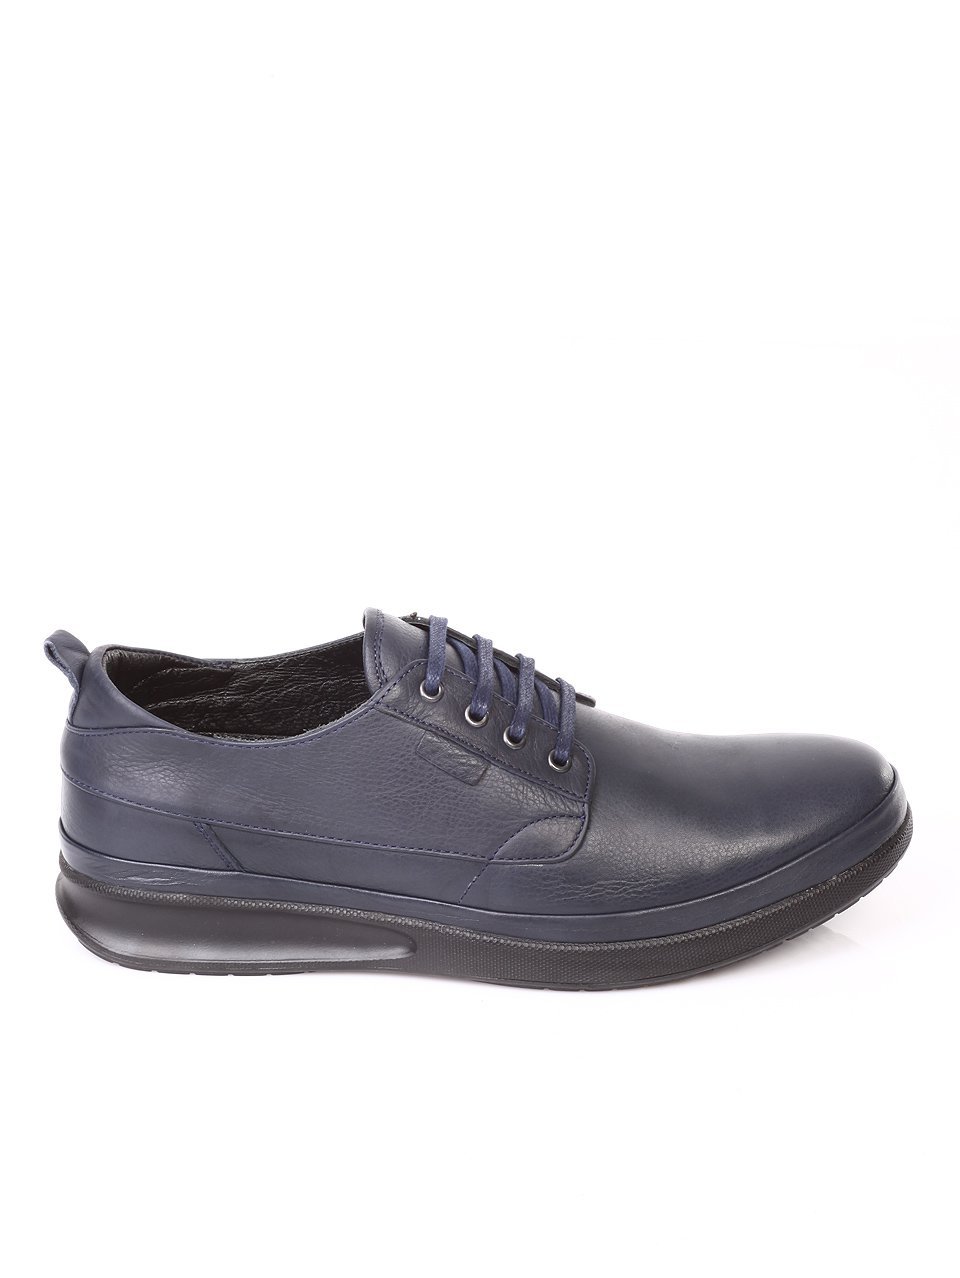 Ежедневни мъжки обувки от естествена кожа в синьо 7AT-171192 dk.blue